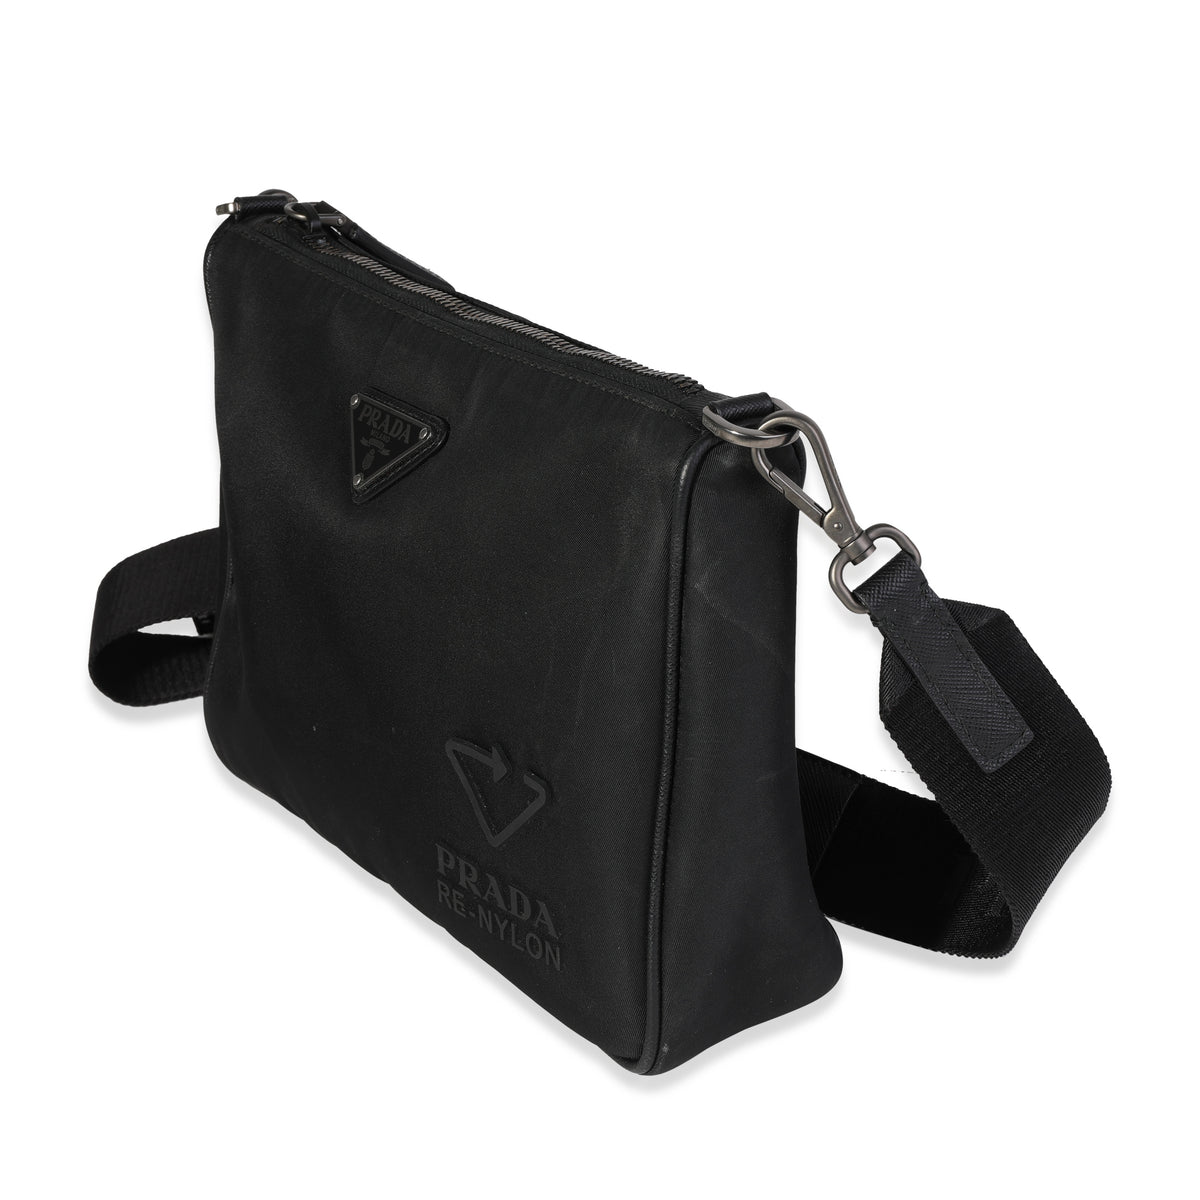 Prada Black Re-Nylon & Saffiano Leather Trim Shoulder Bag